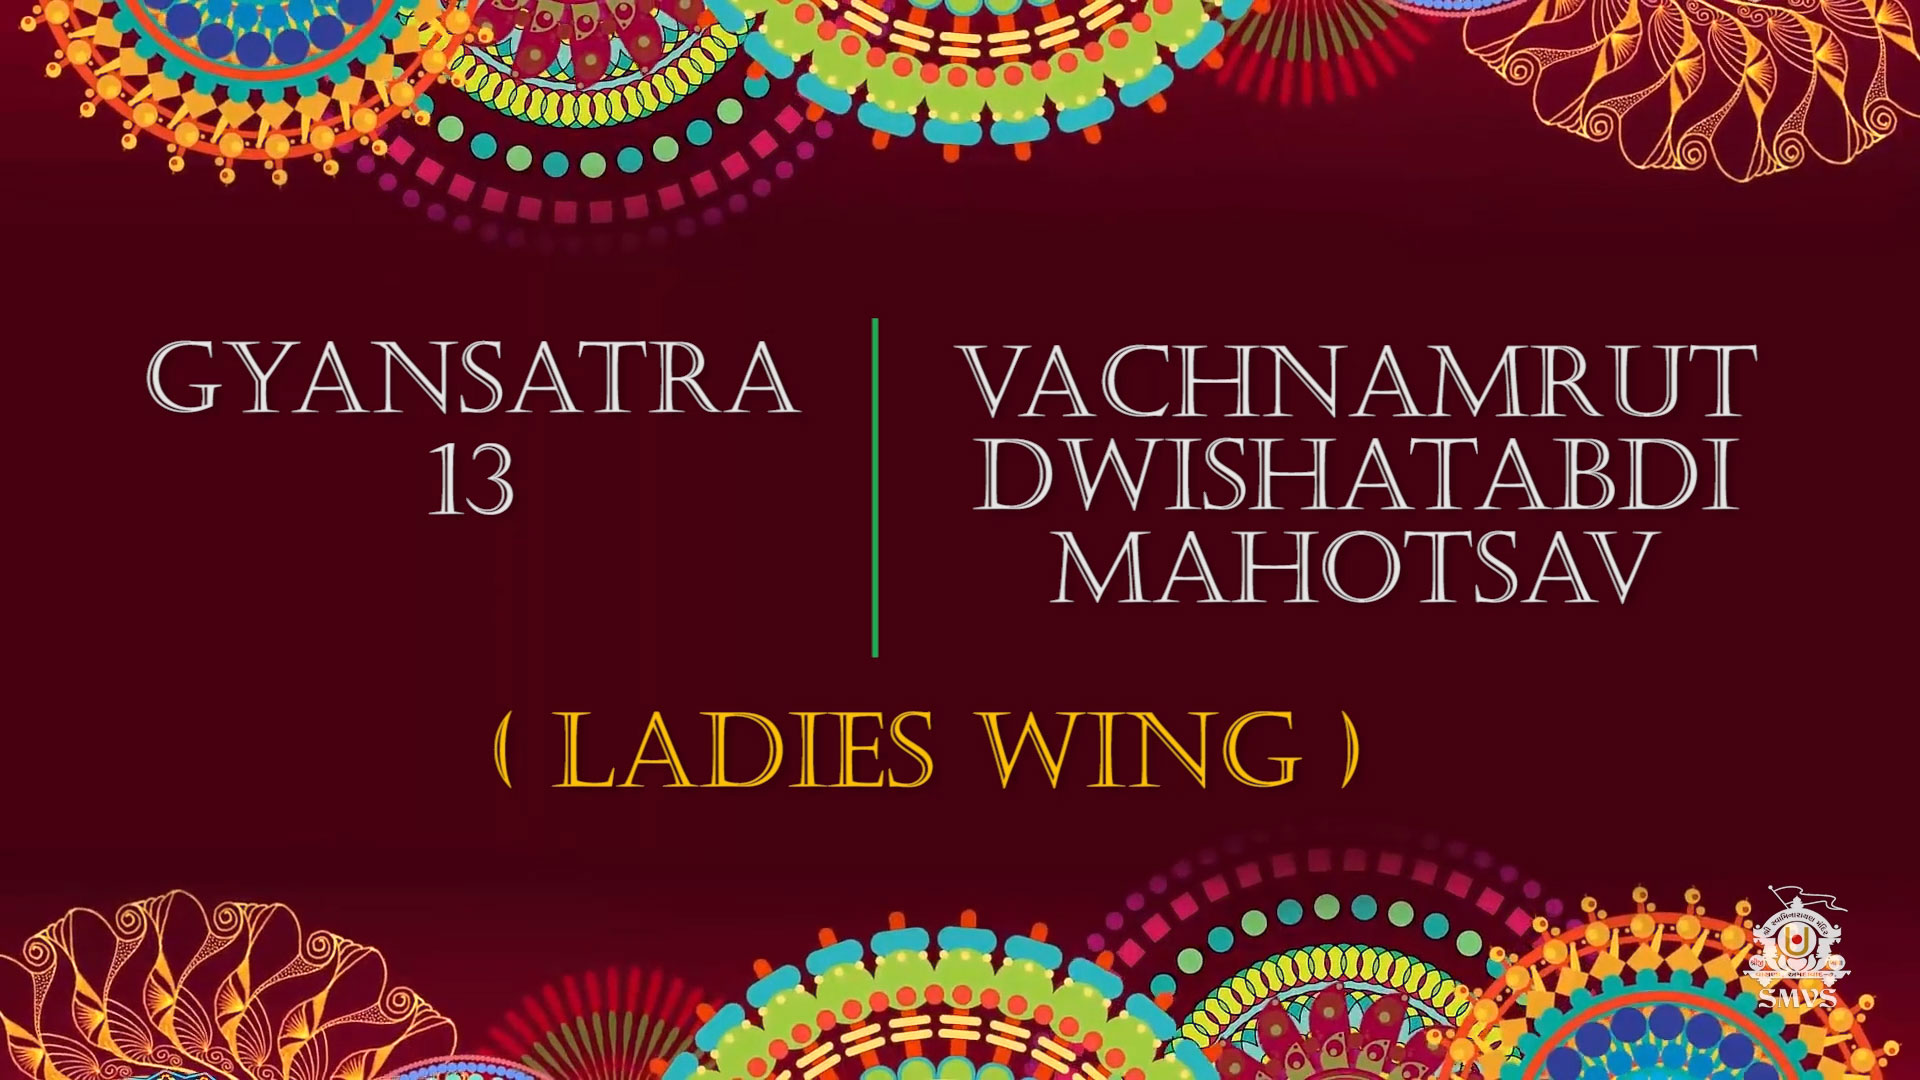 Vachanamrut Dwishatabdi Mahotsav & Gyansatra 13 | Ladies Wing | Highlights